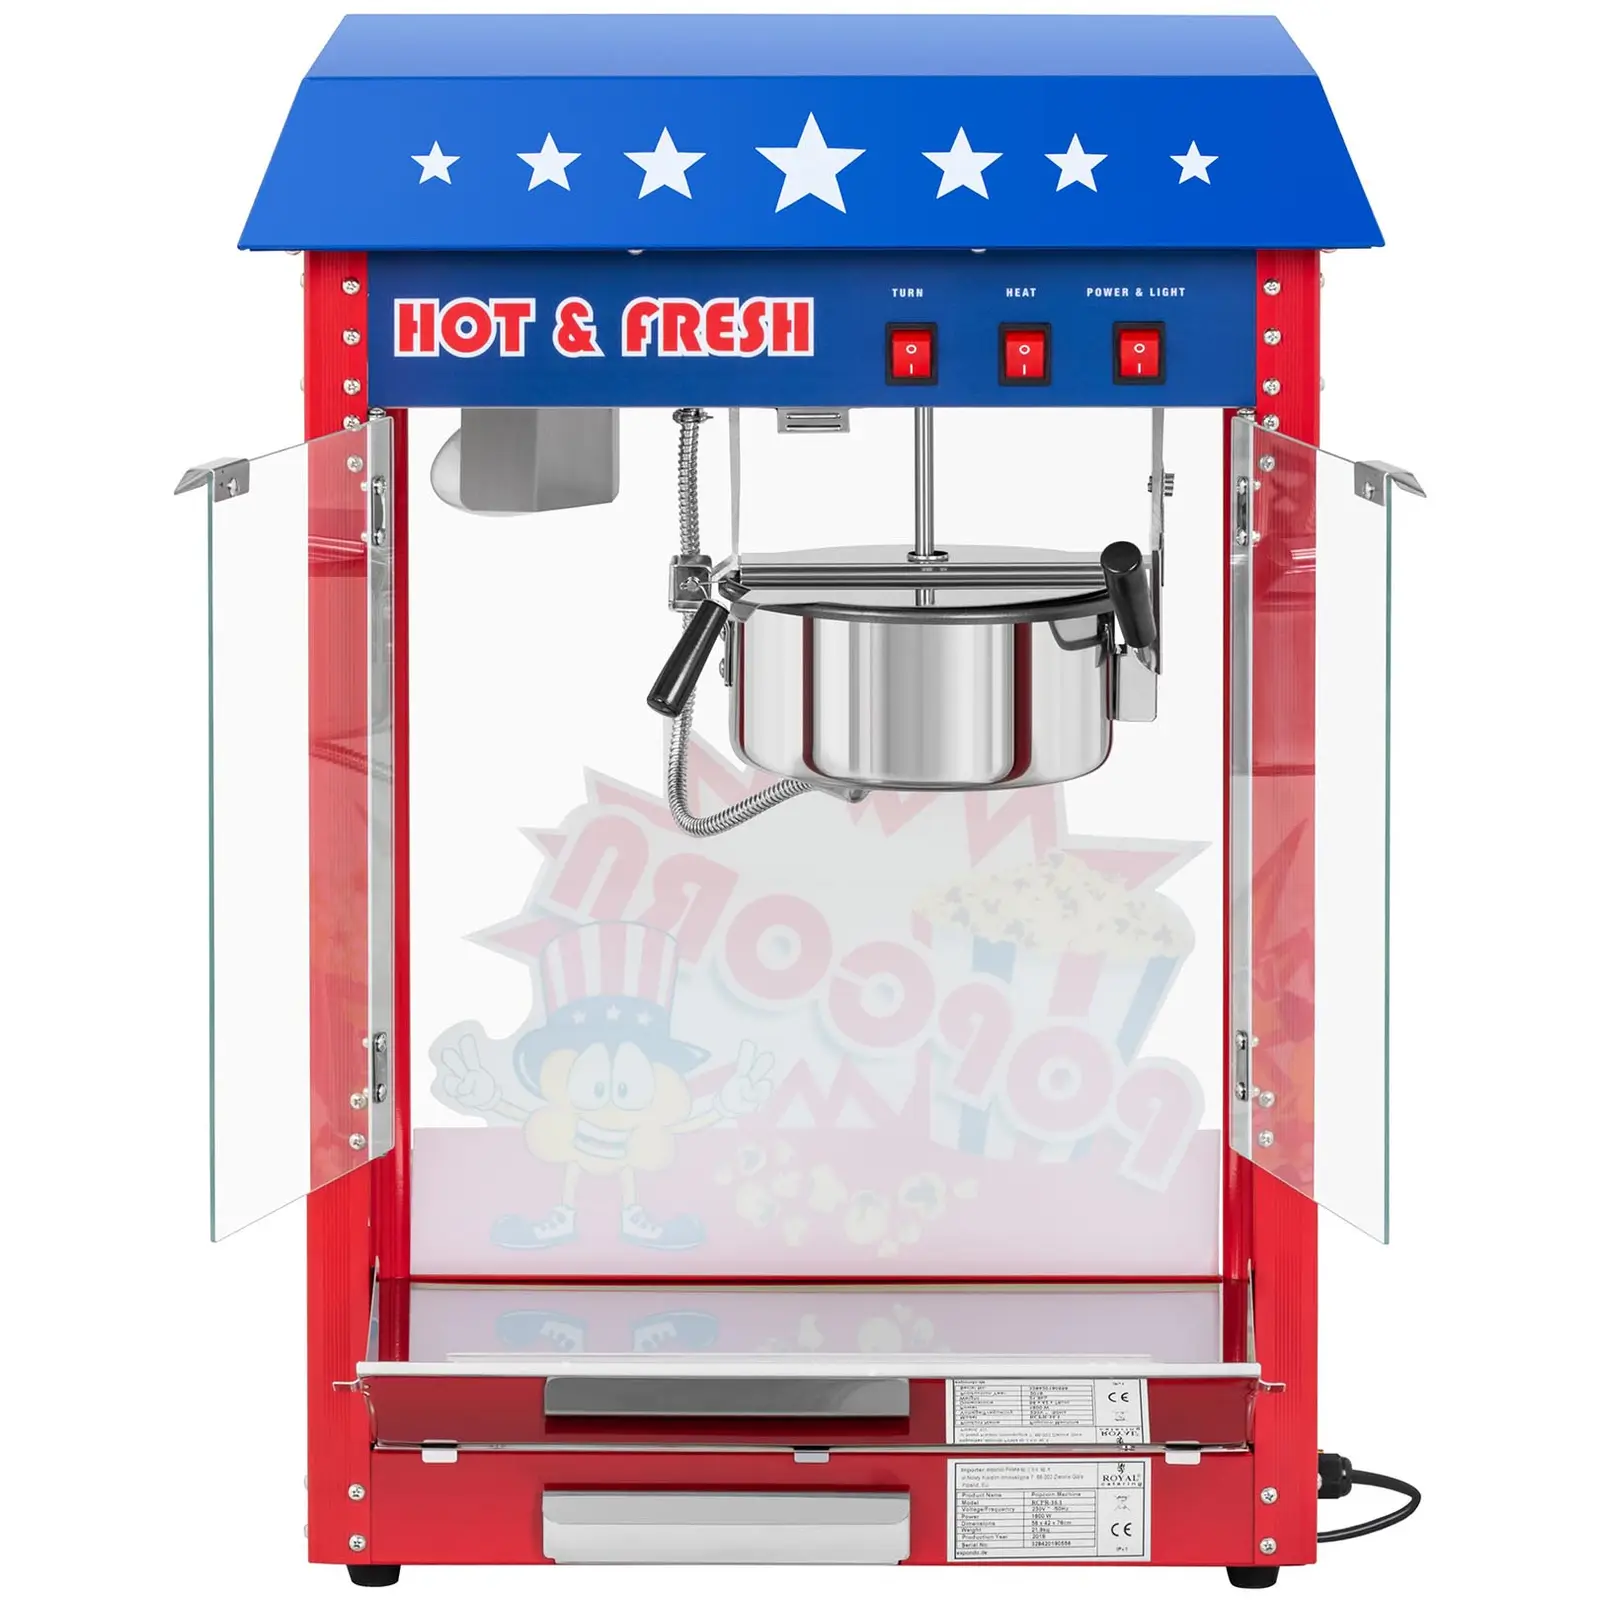 Maszyna do popcornu - amerykański design